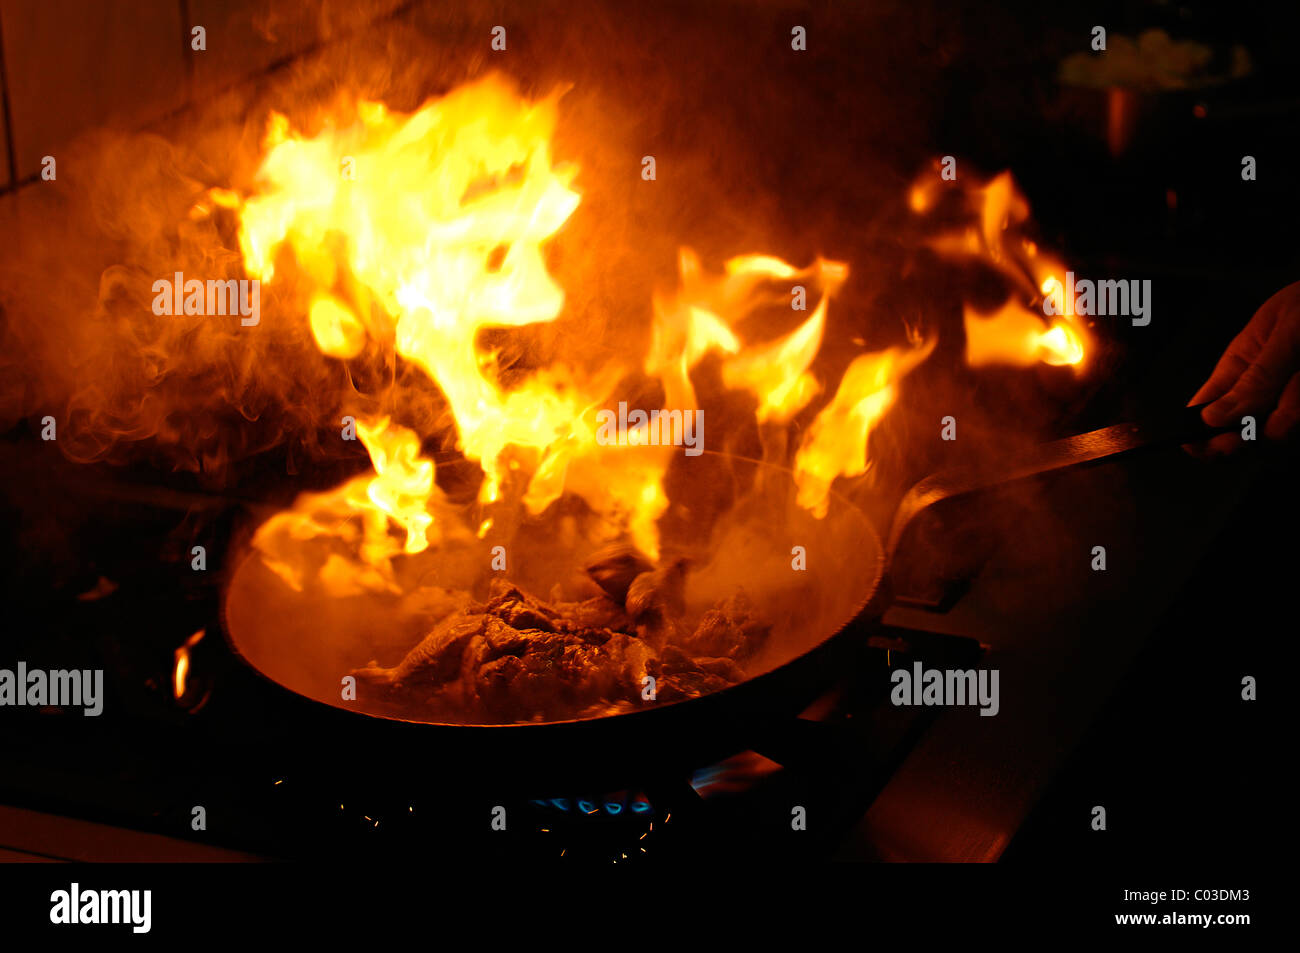 Flamme explosif dans une poêle avec une viande sur une cuisinière à gaz avec graisse qui est trop chaude Banque D'Images